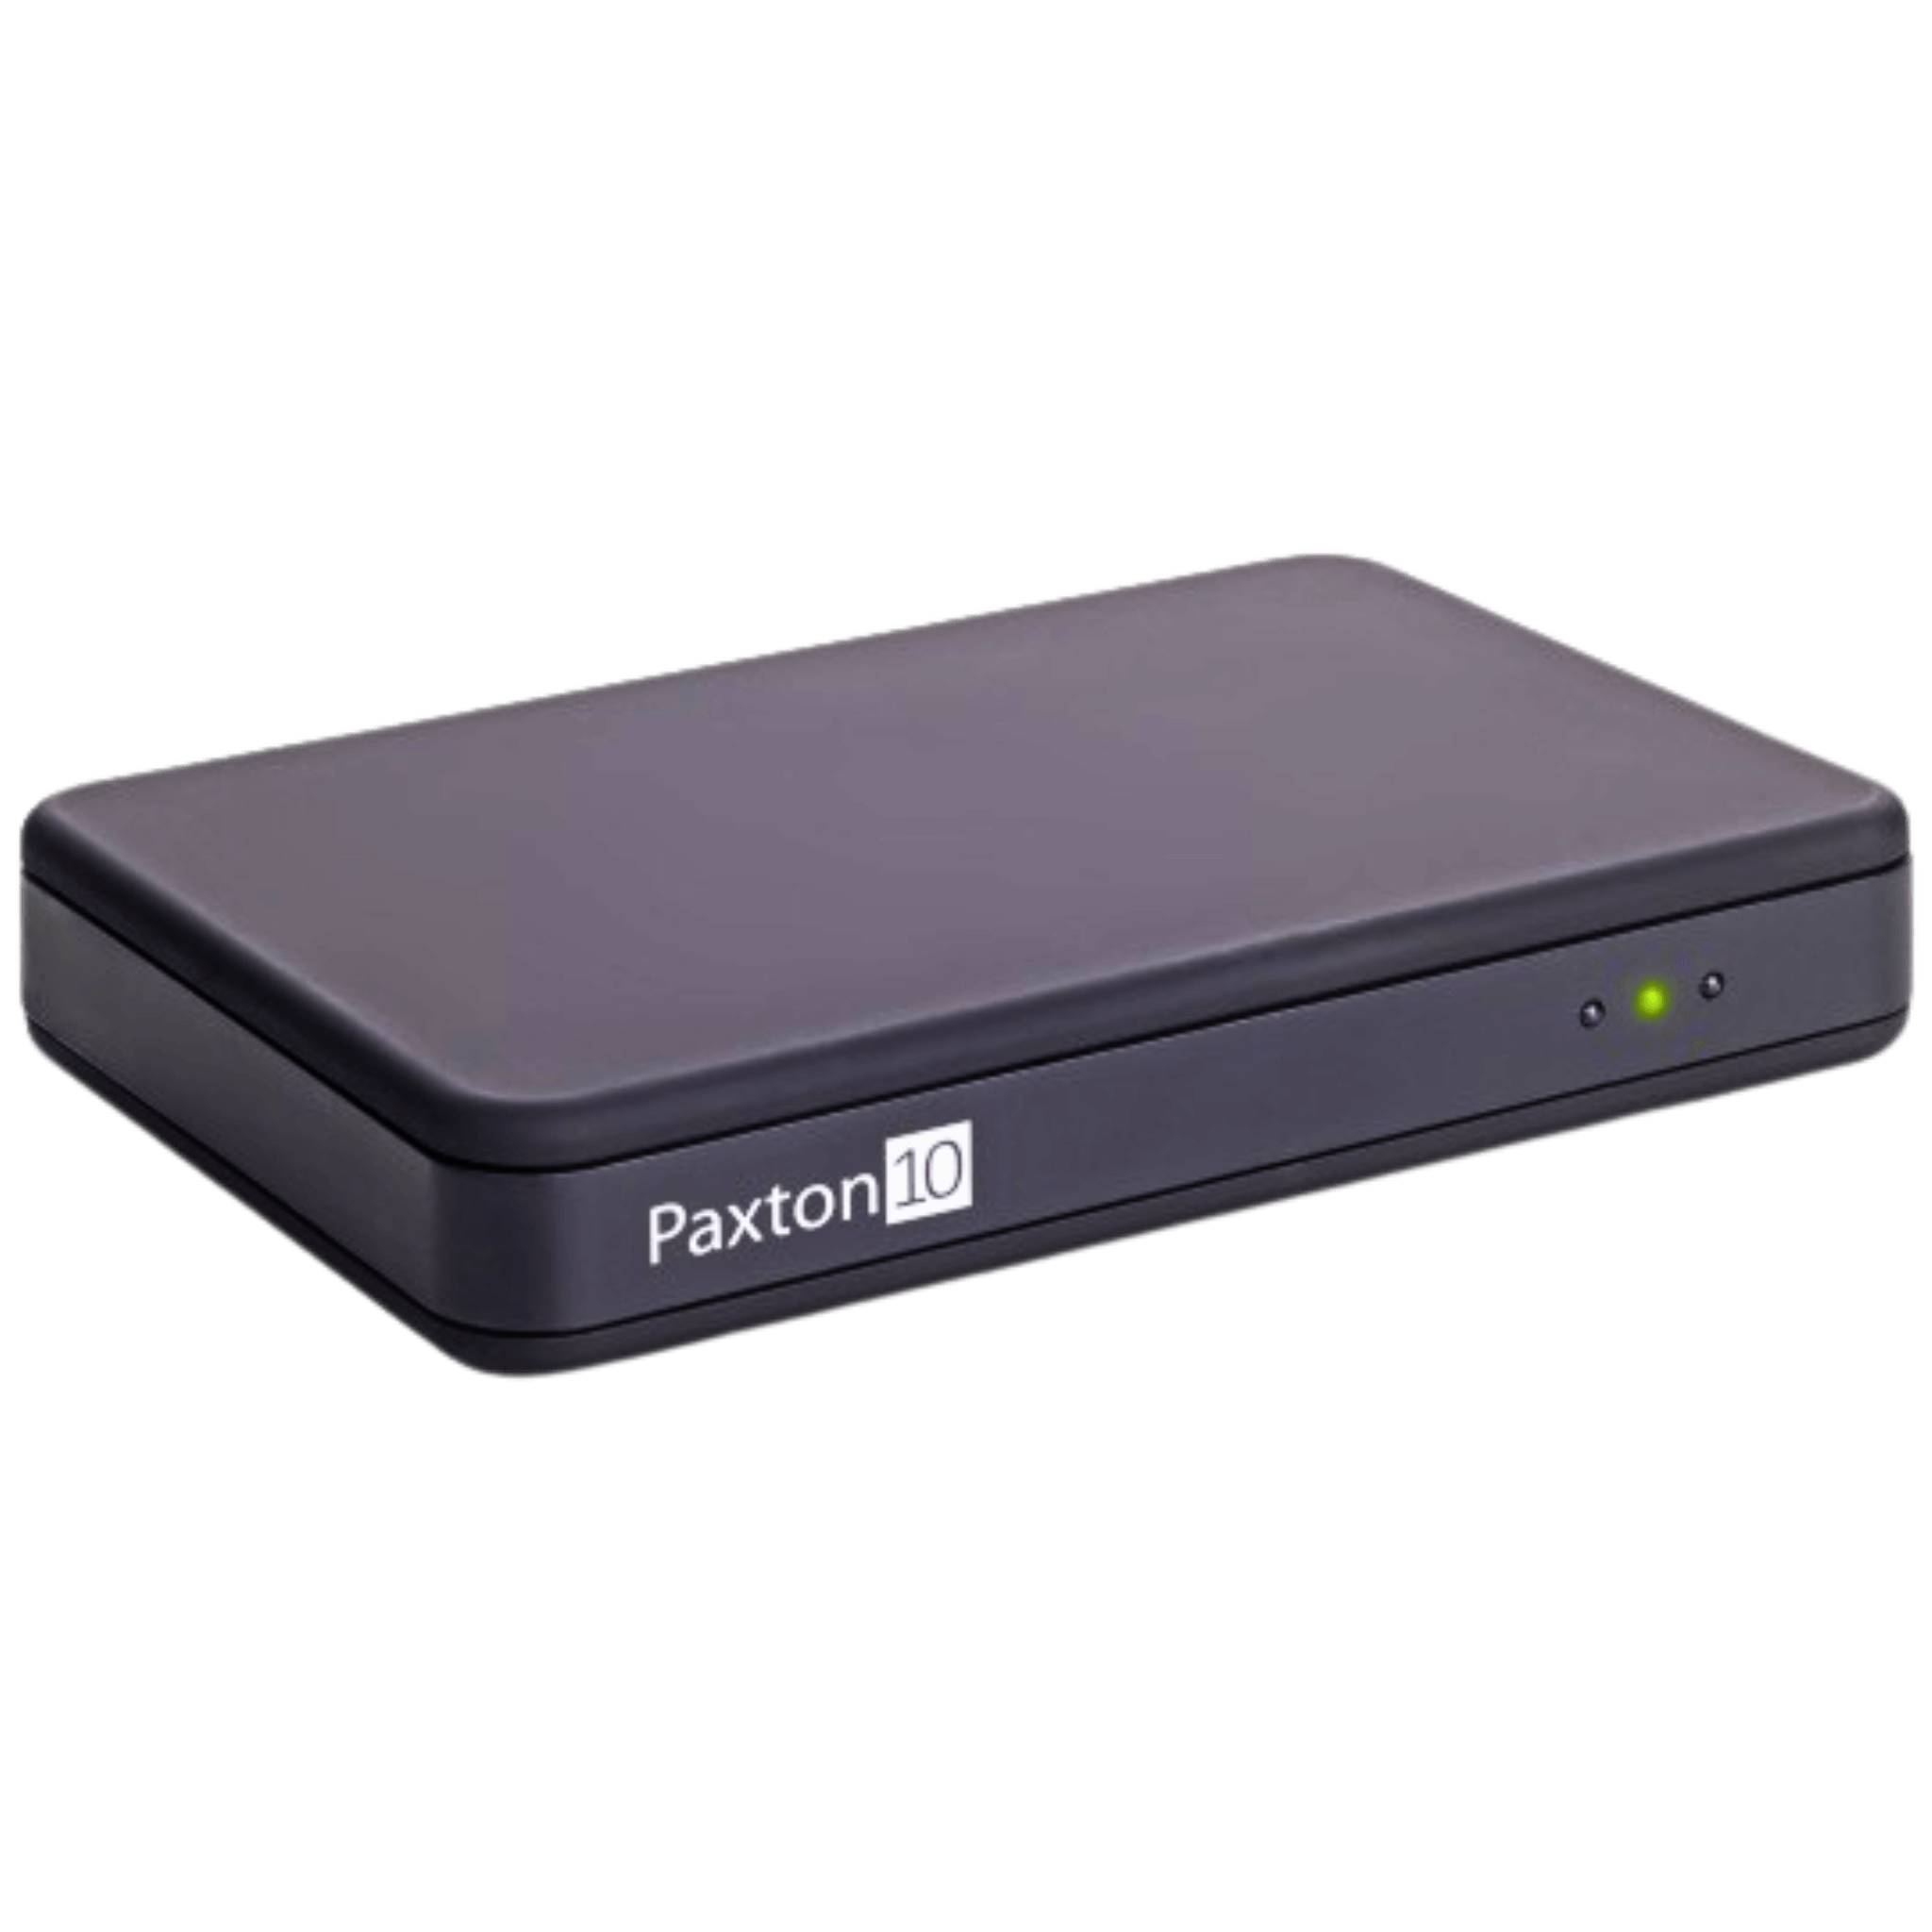 Paxton10 010-387 Desktop Reader, USB